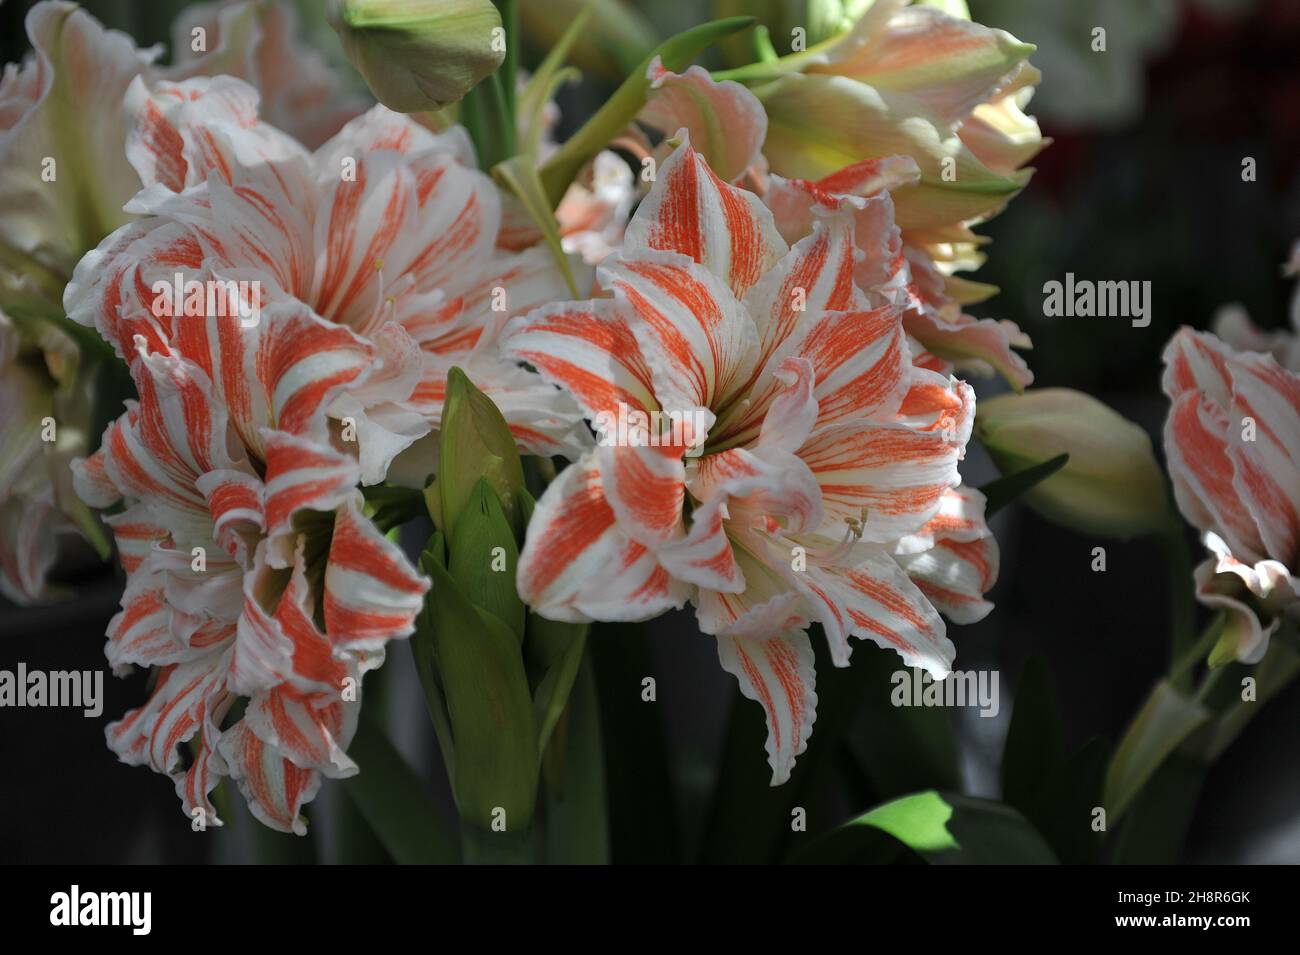 Rot-weiße, doppelblütige hippeastrum (Amaryllis) Dancing Queen blüht im April in einem Garten Stockfoto